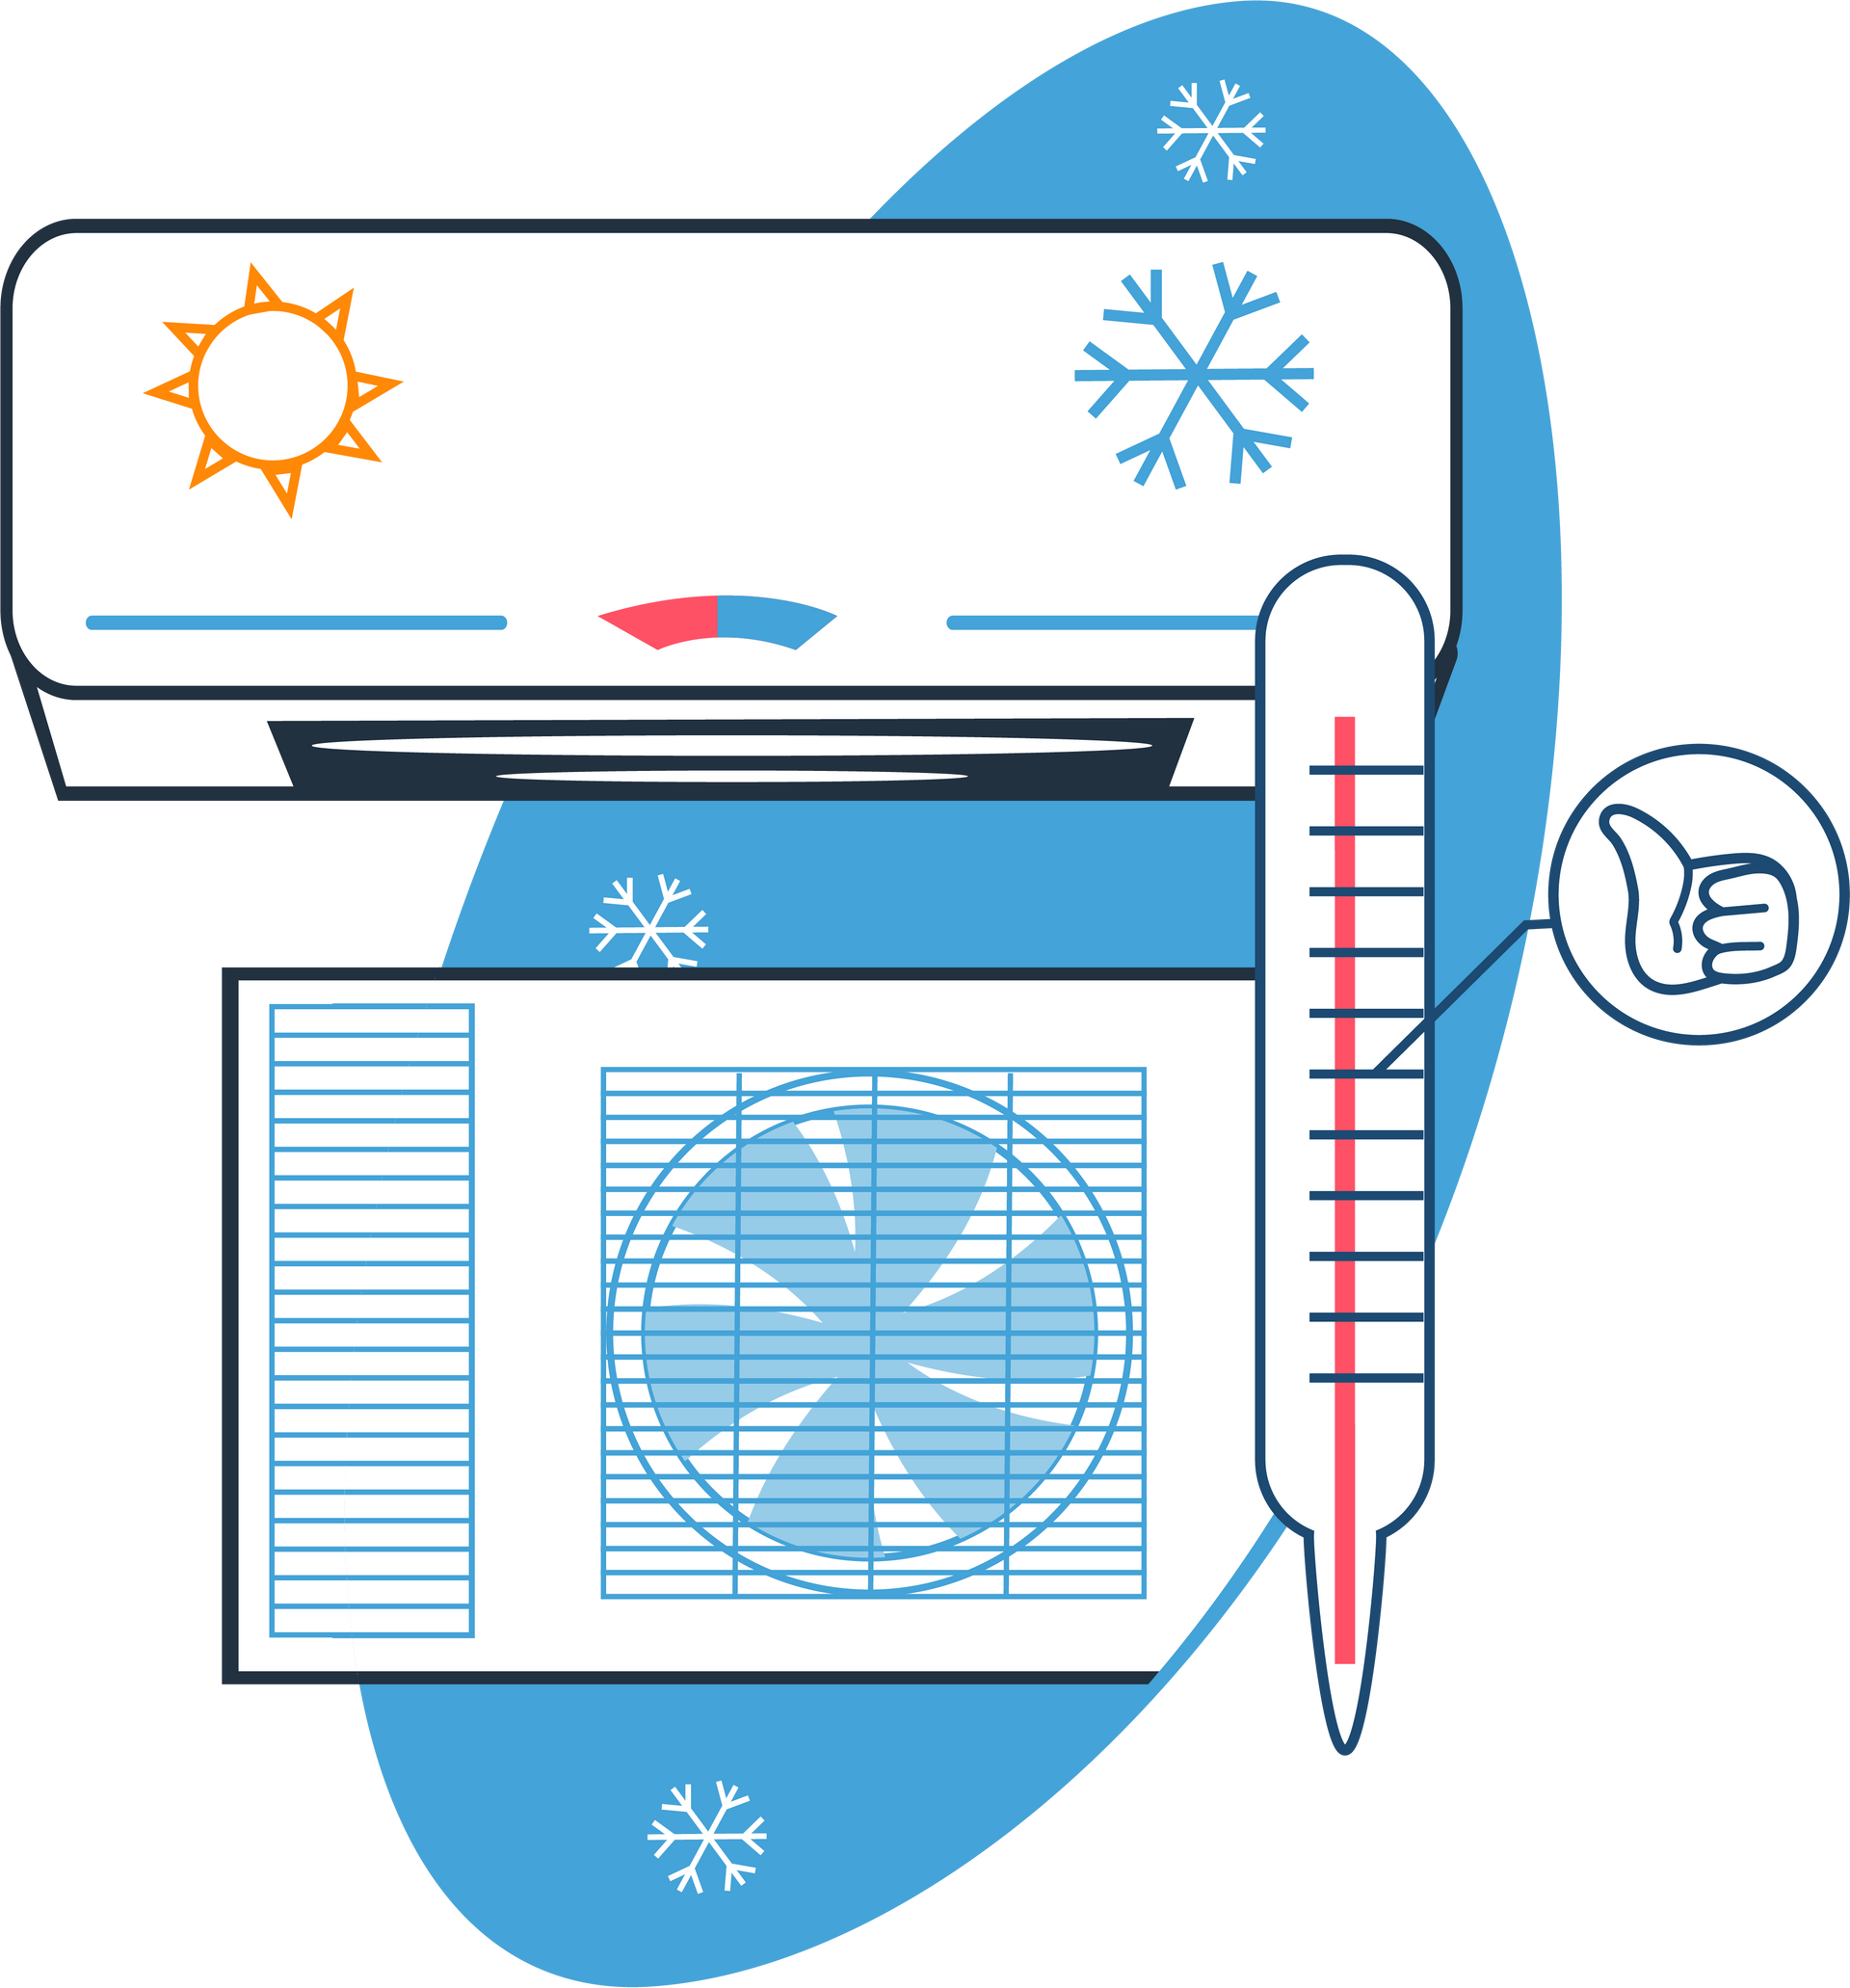 Systèmes de chauffage et climatisation en dessin - Page Vente